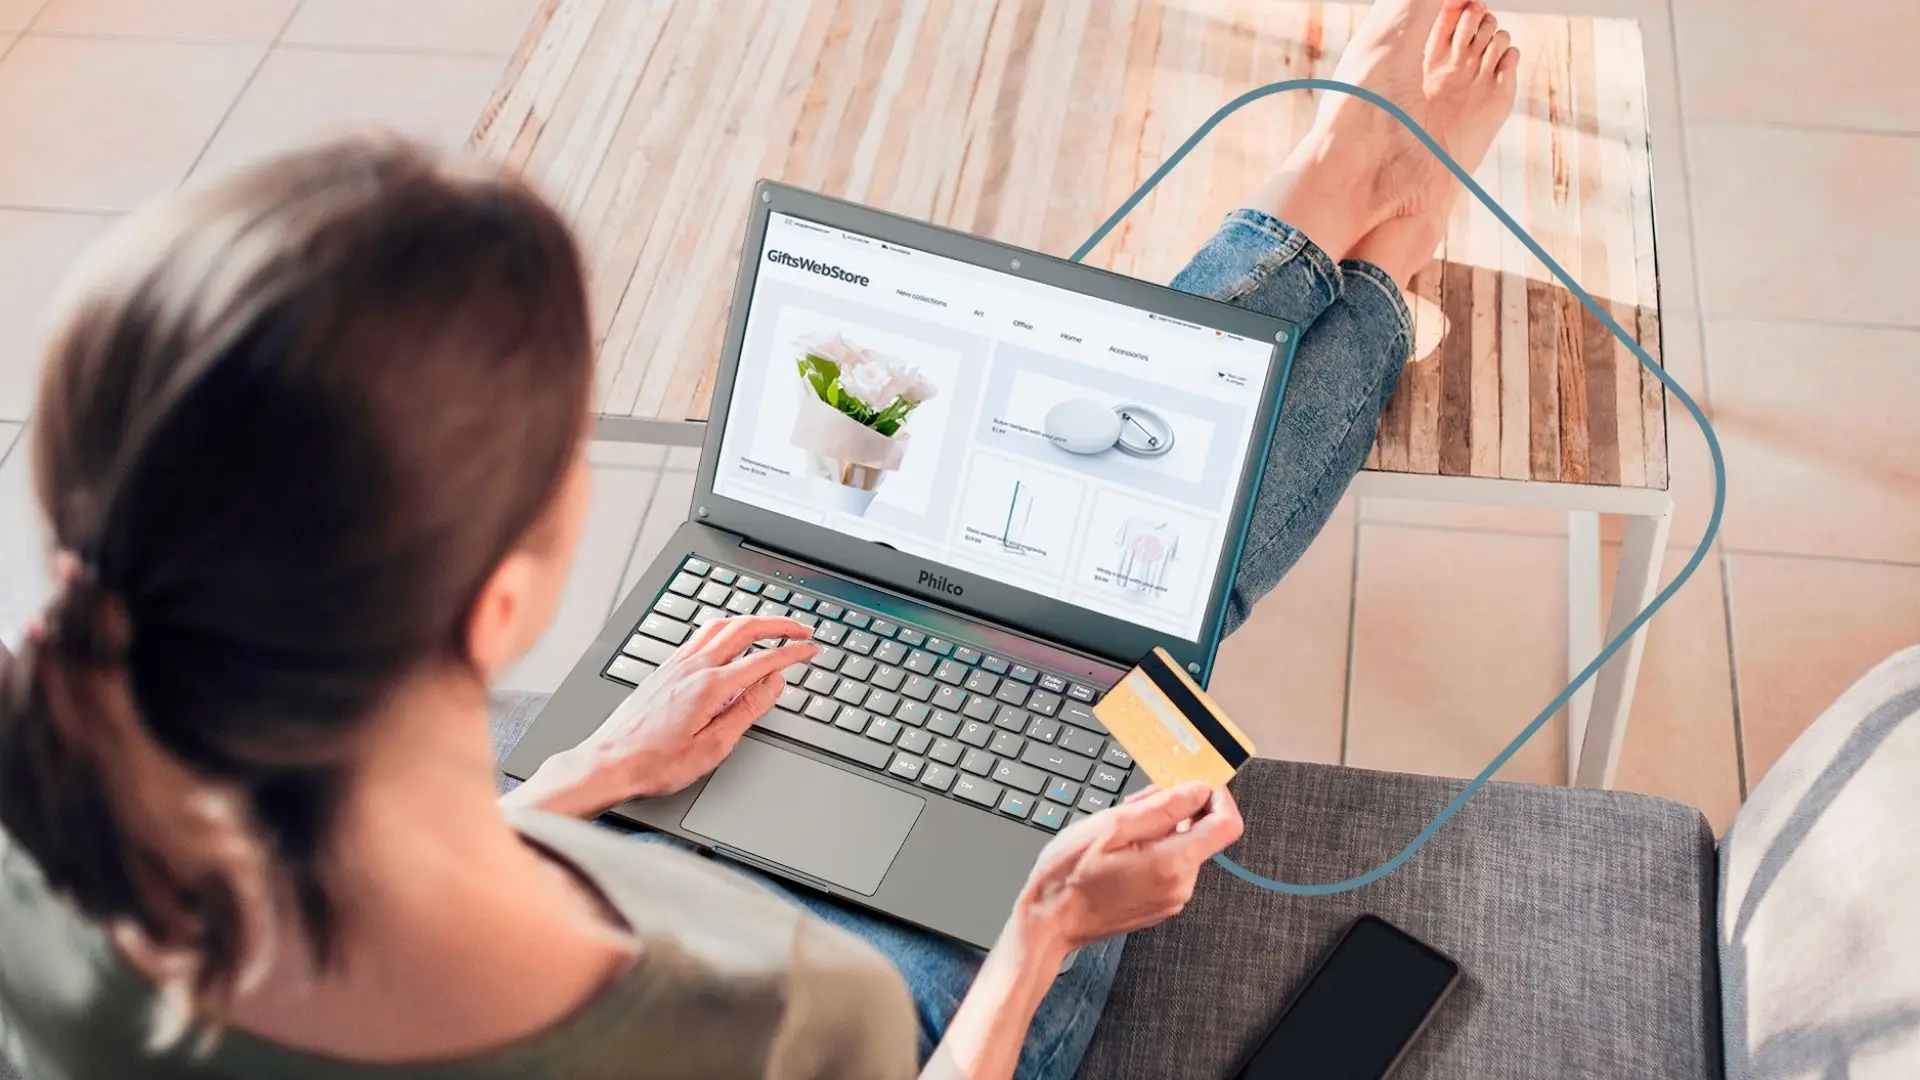 Uma mulher de calça jeans, sentada no sofá, enquanto realiza uma compra online com o notebook Philco que está em seu colo.